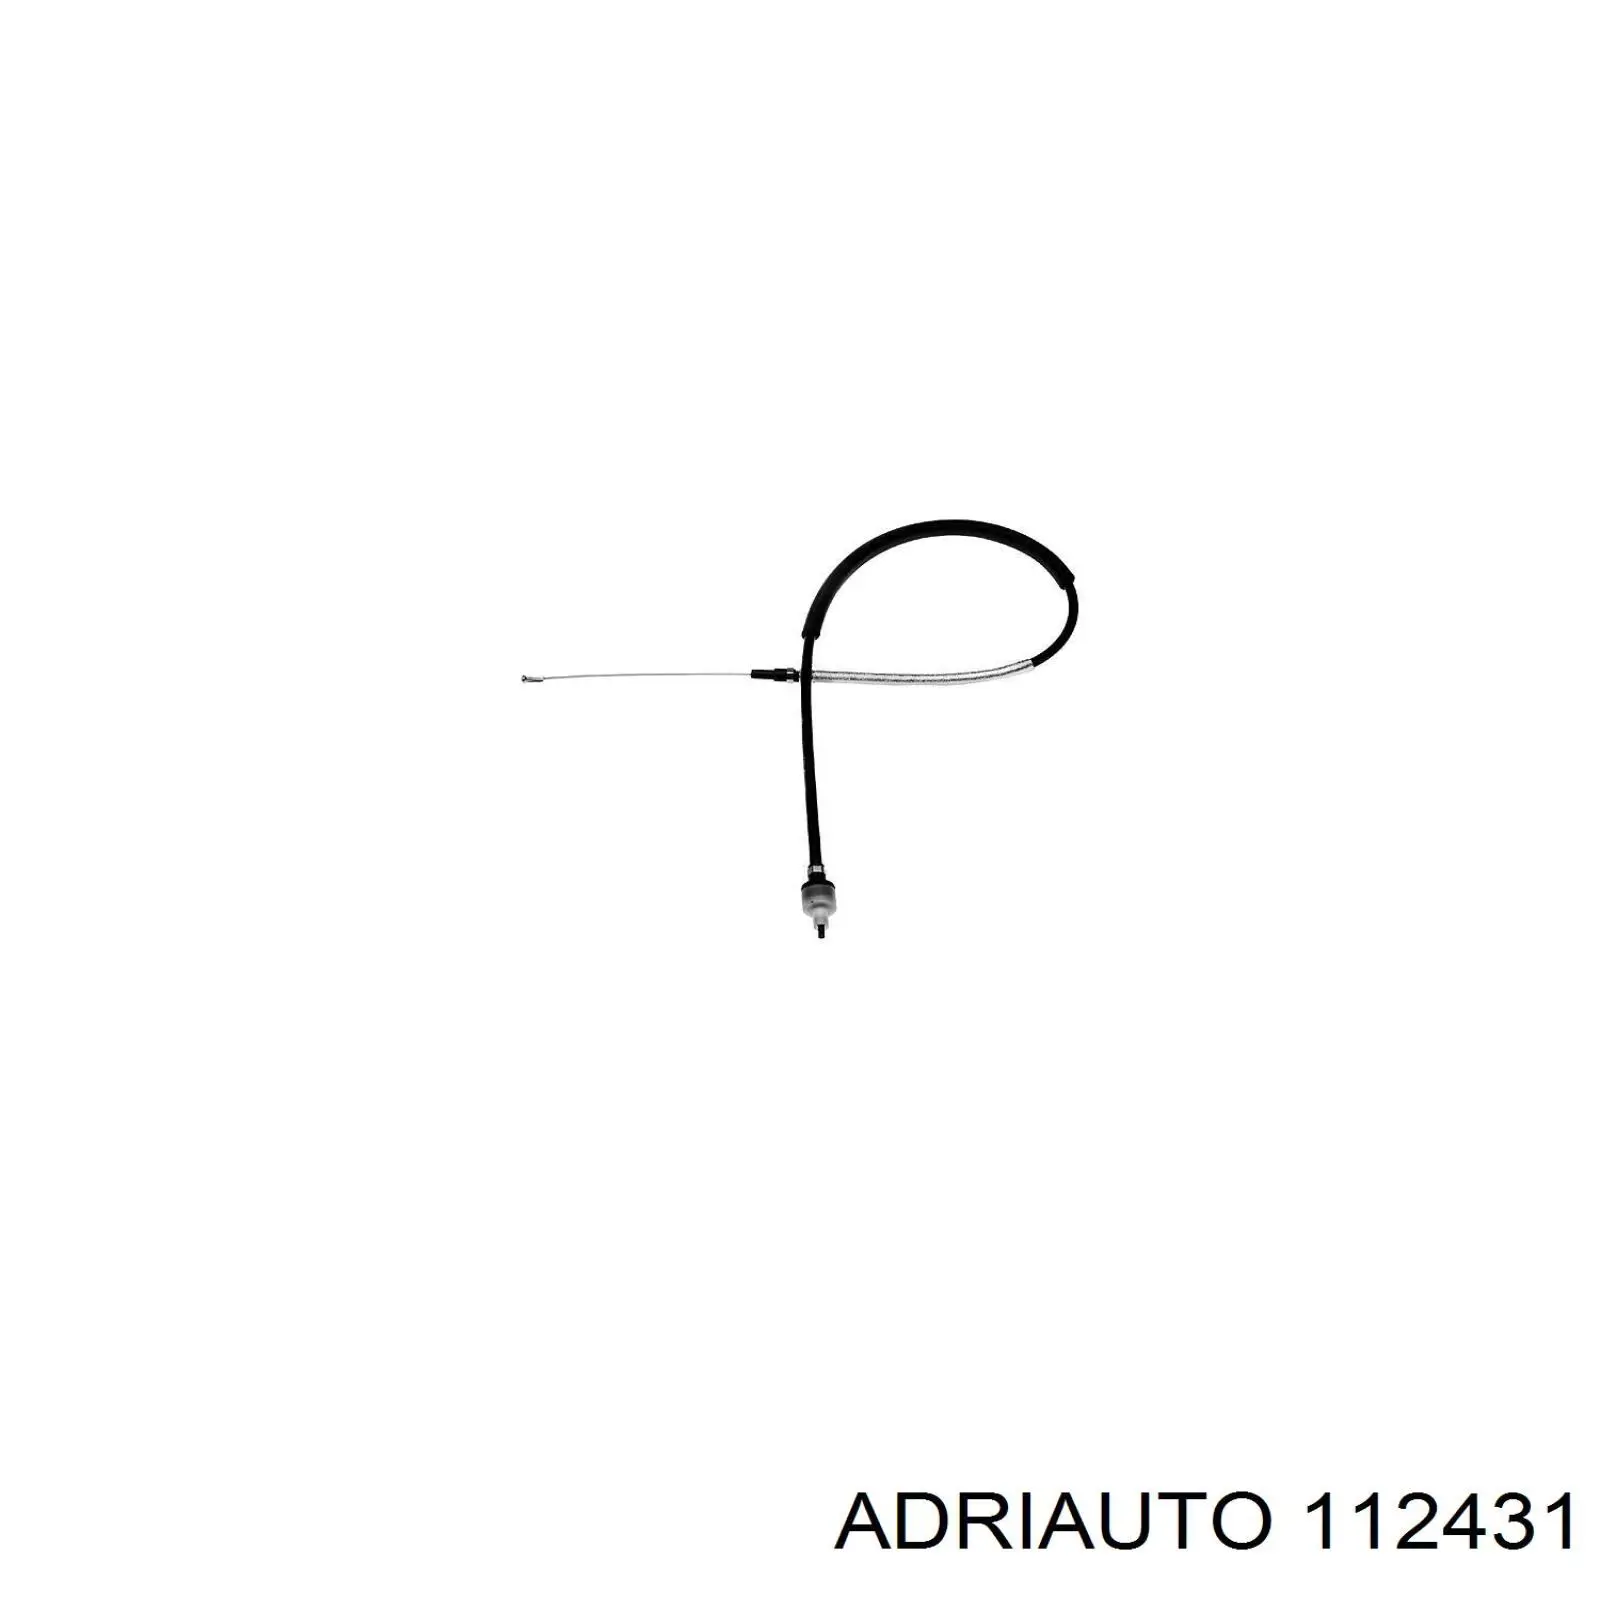 112431 Adriauto трос ручного тормоза задний левый